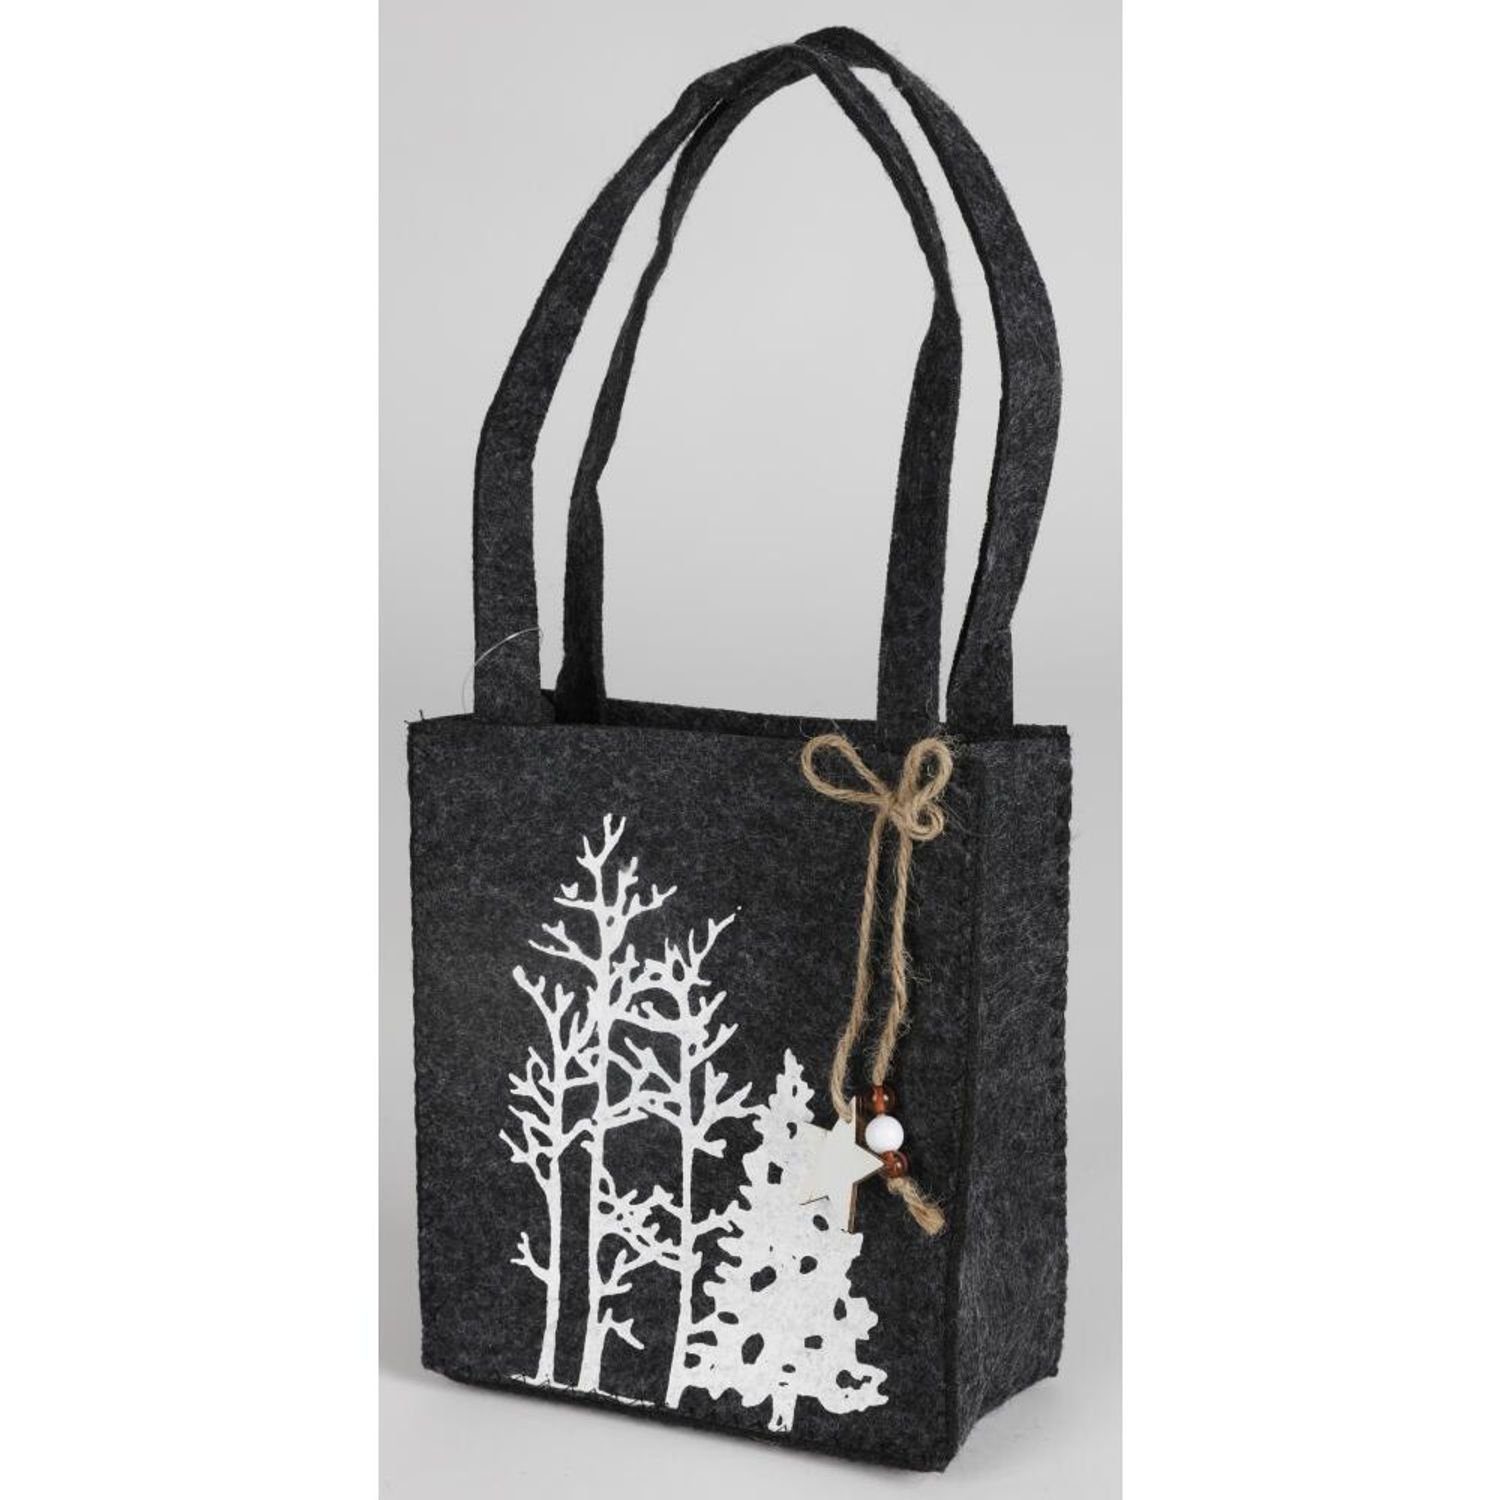 Waldmotiv Geschenke Weihnachtliche Dekofigur Stück 12 Filz-Taschen ver BURI weiß grau